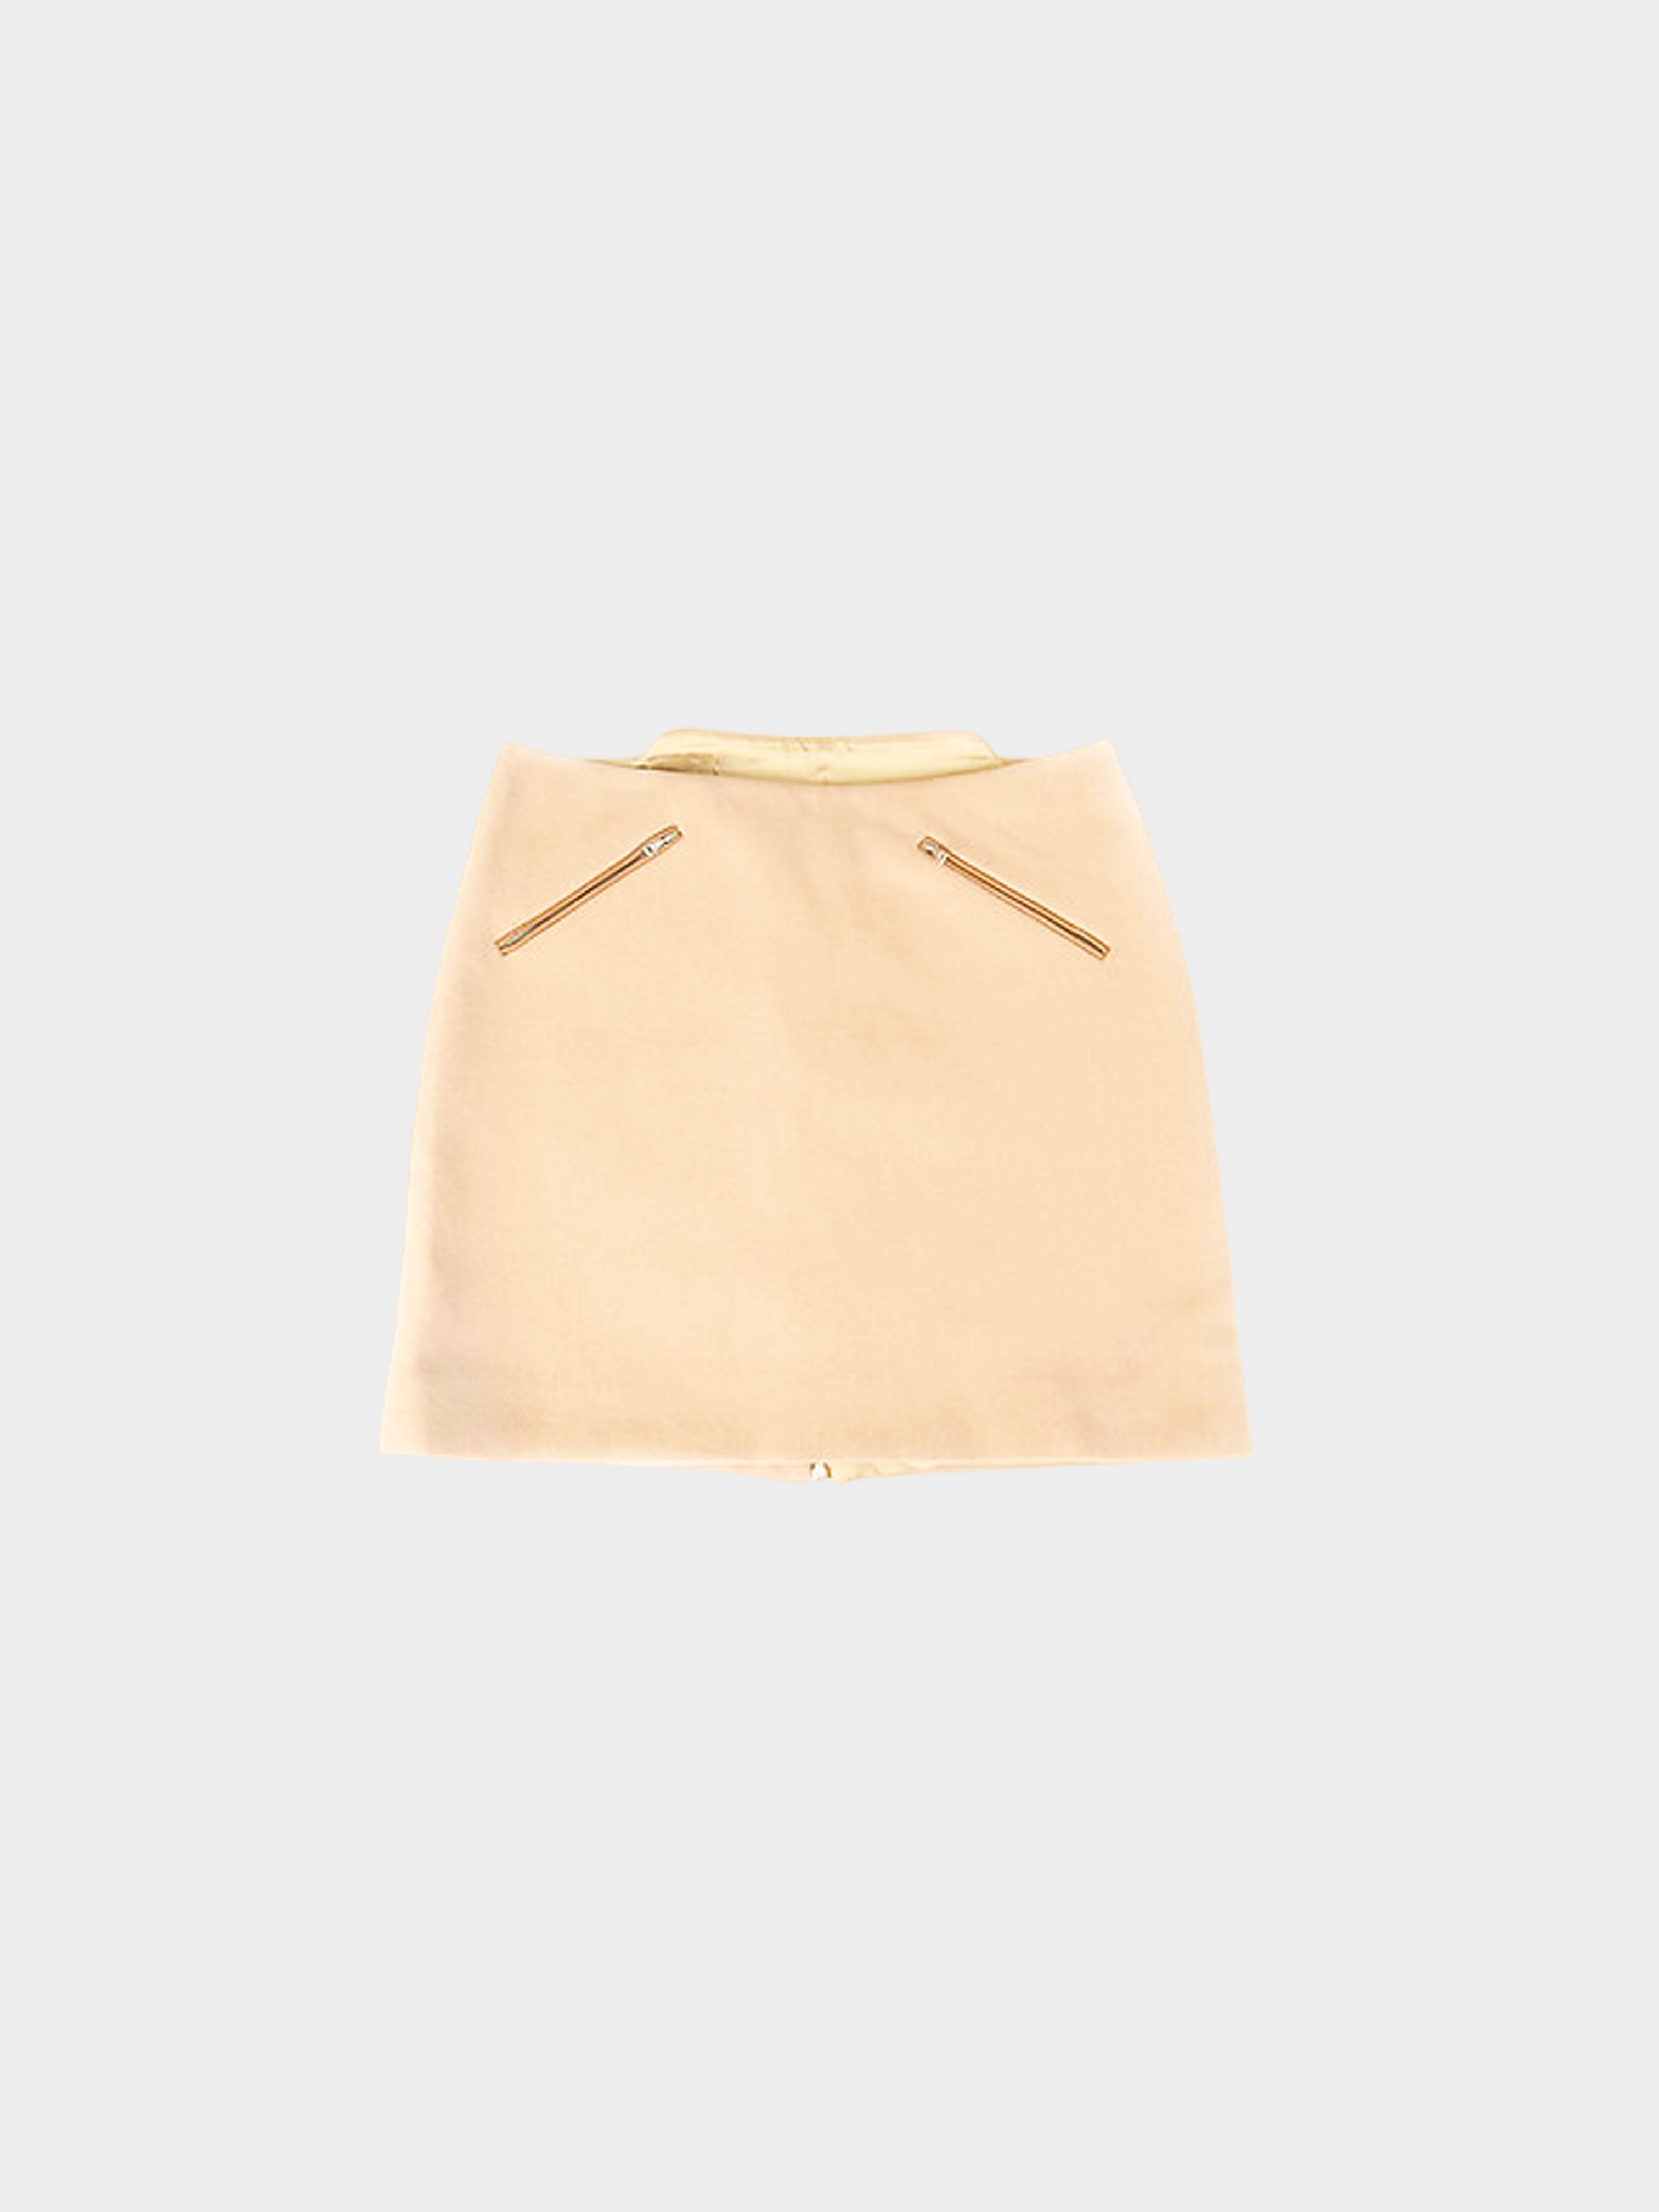 Prada SS 1999 Beige Mini Skirt